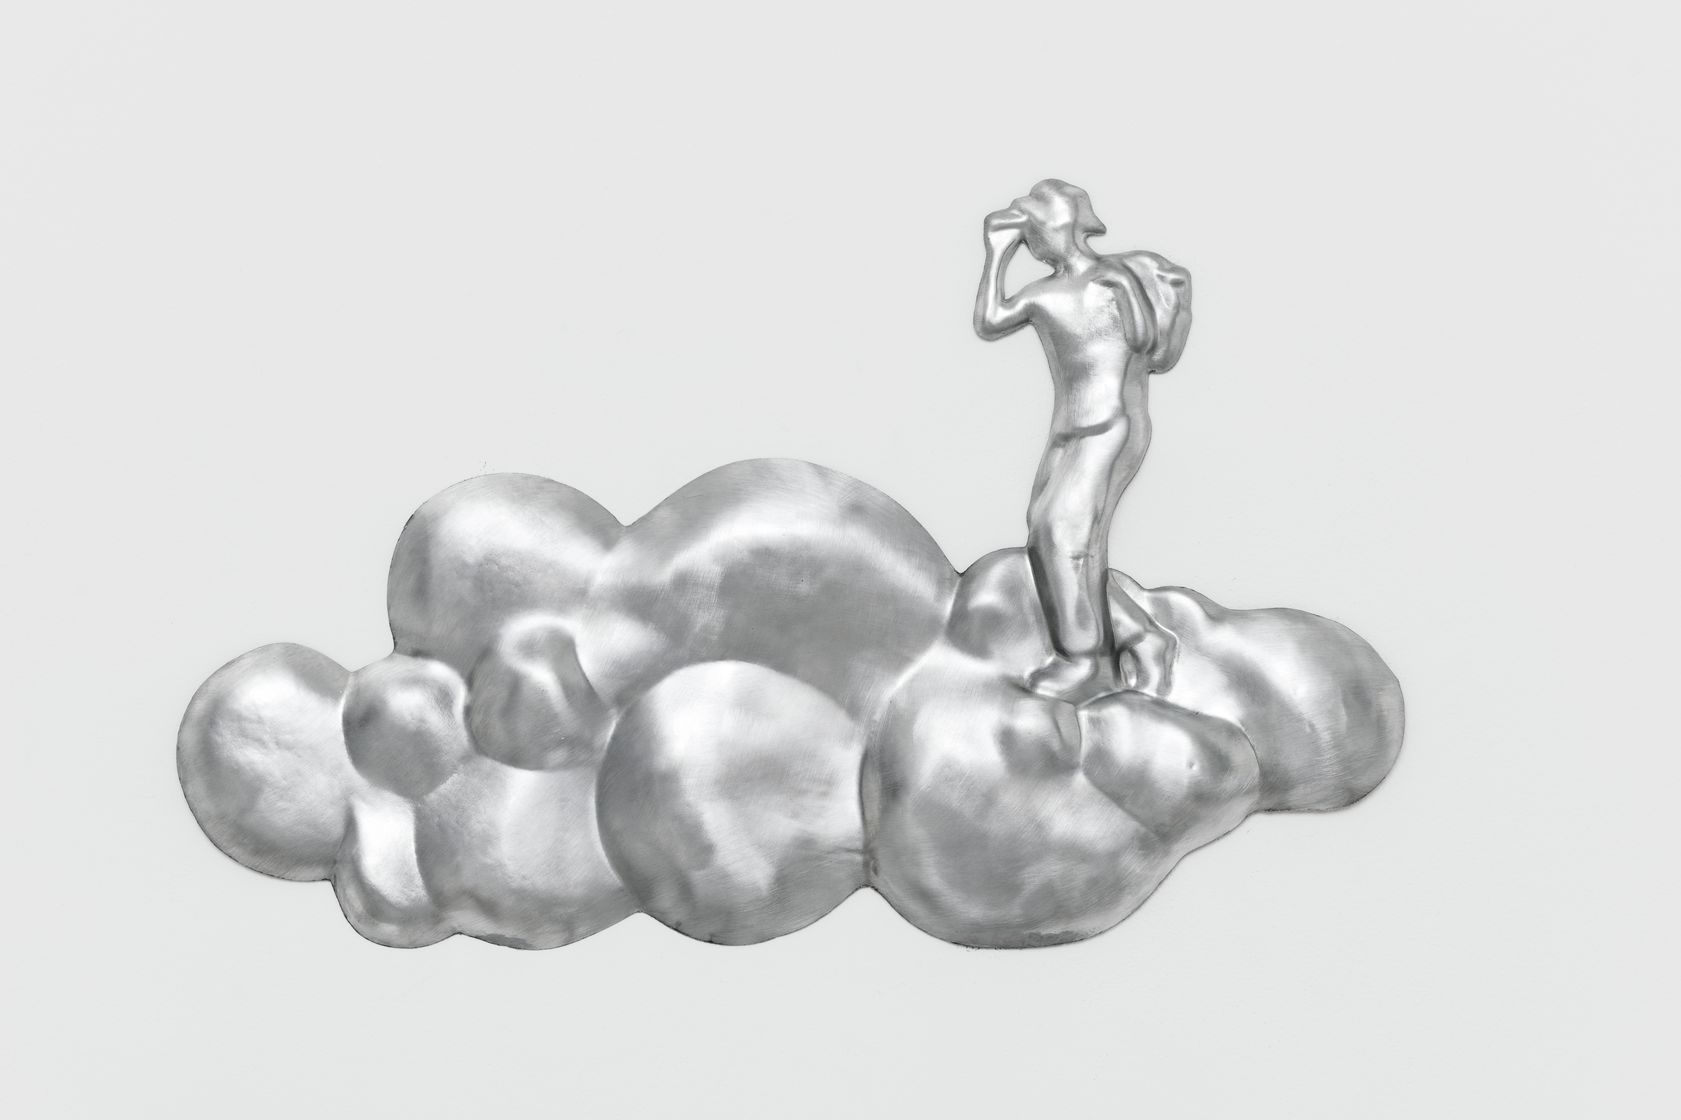 Abraham Poincheval, Walk on Clouds (mural), 2020
Dans l'épaisseur de nos lisières, là où naissent les dragons, Domaine départemental de Chamarande - Centre d'art contemporain, Chamarande (FR)
15 avril 2023 - 15 octobre 2023
 